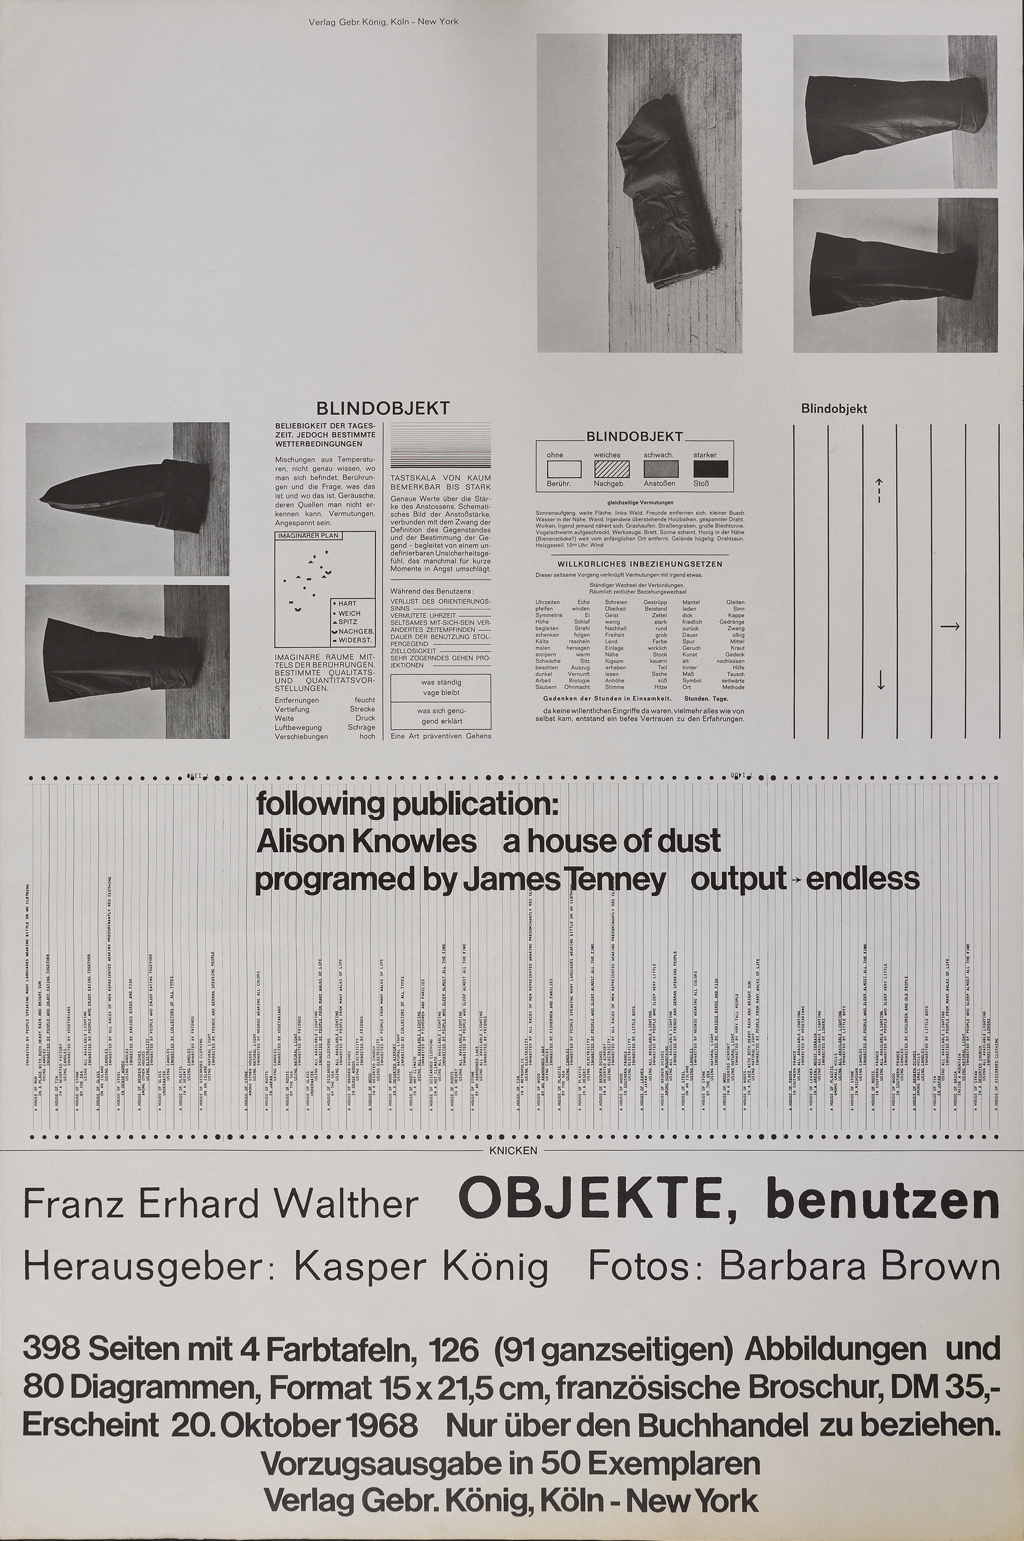 Werk - Franz Erhard Walther. OBJEKTE, benutzen - MNK_01828_01777_koenig_publikation-objekte_002.jpg